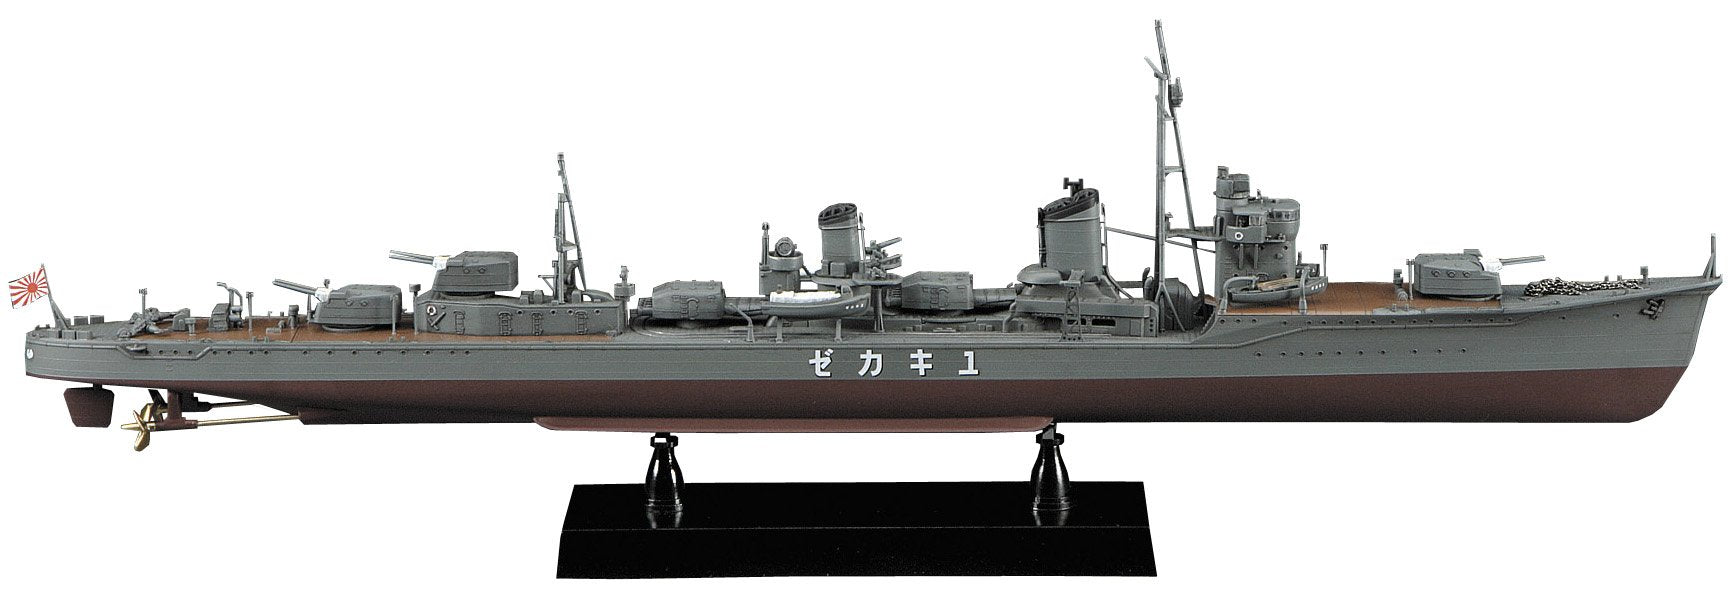 Hasegawa 40063 1/350 marine japonaise marine japonaise destroyer blindé Yukikaze Showa 15 modèle en plastique d'achèvement